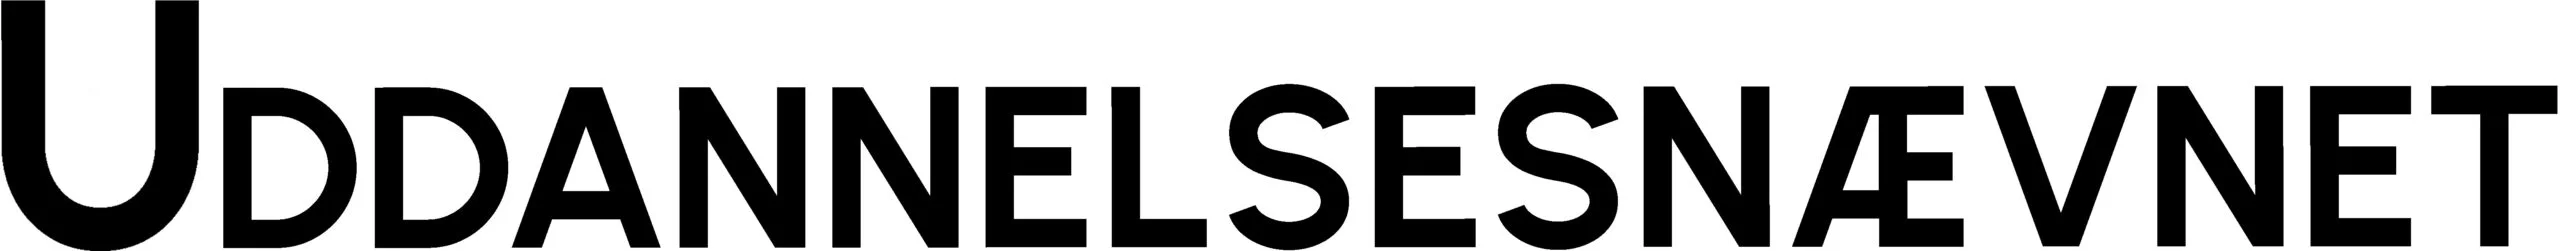 U-LUP-logo_sort-scaled.jpg